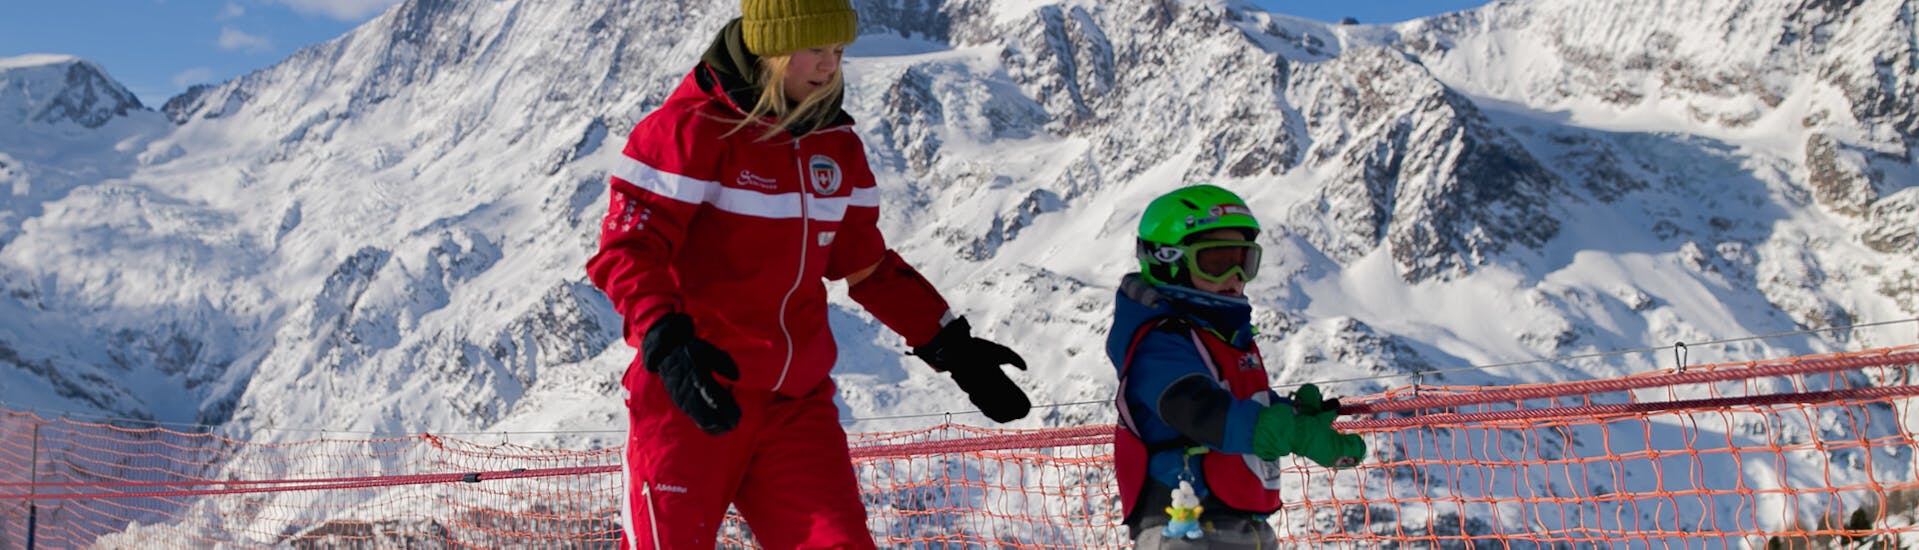 Lezioni private di sci per bambini per tutti i livelli con Swiss Ski School Saas-Grund.